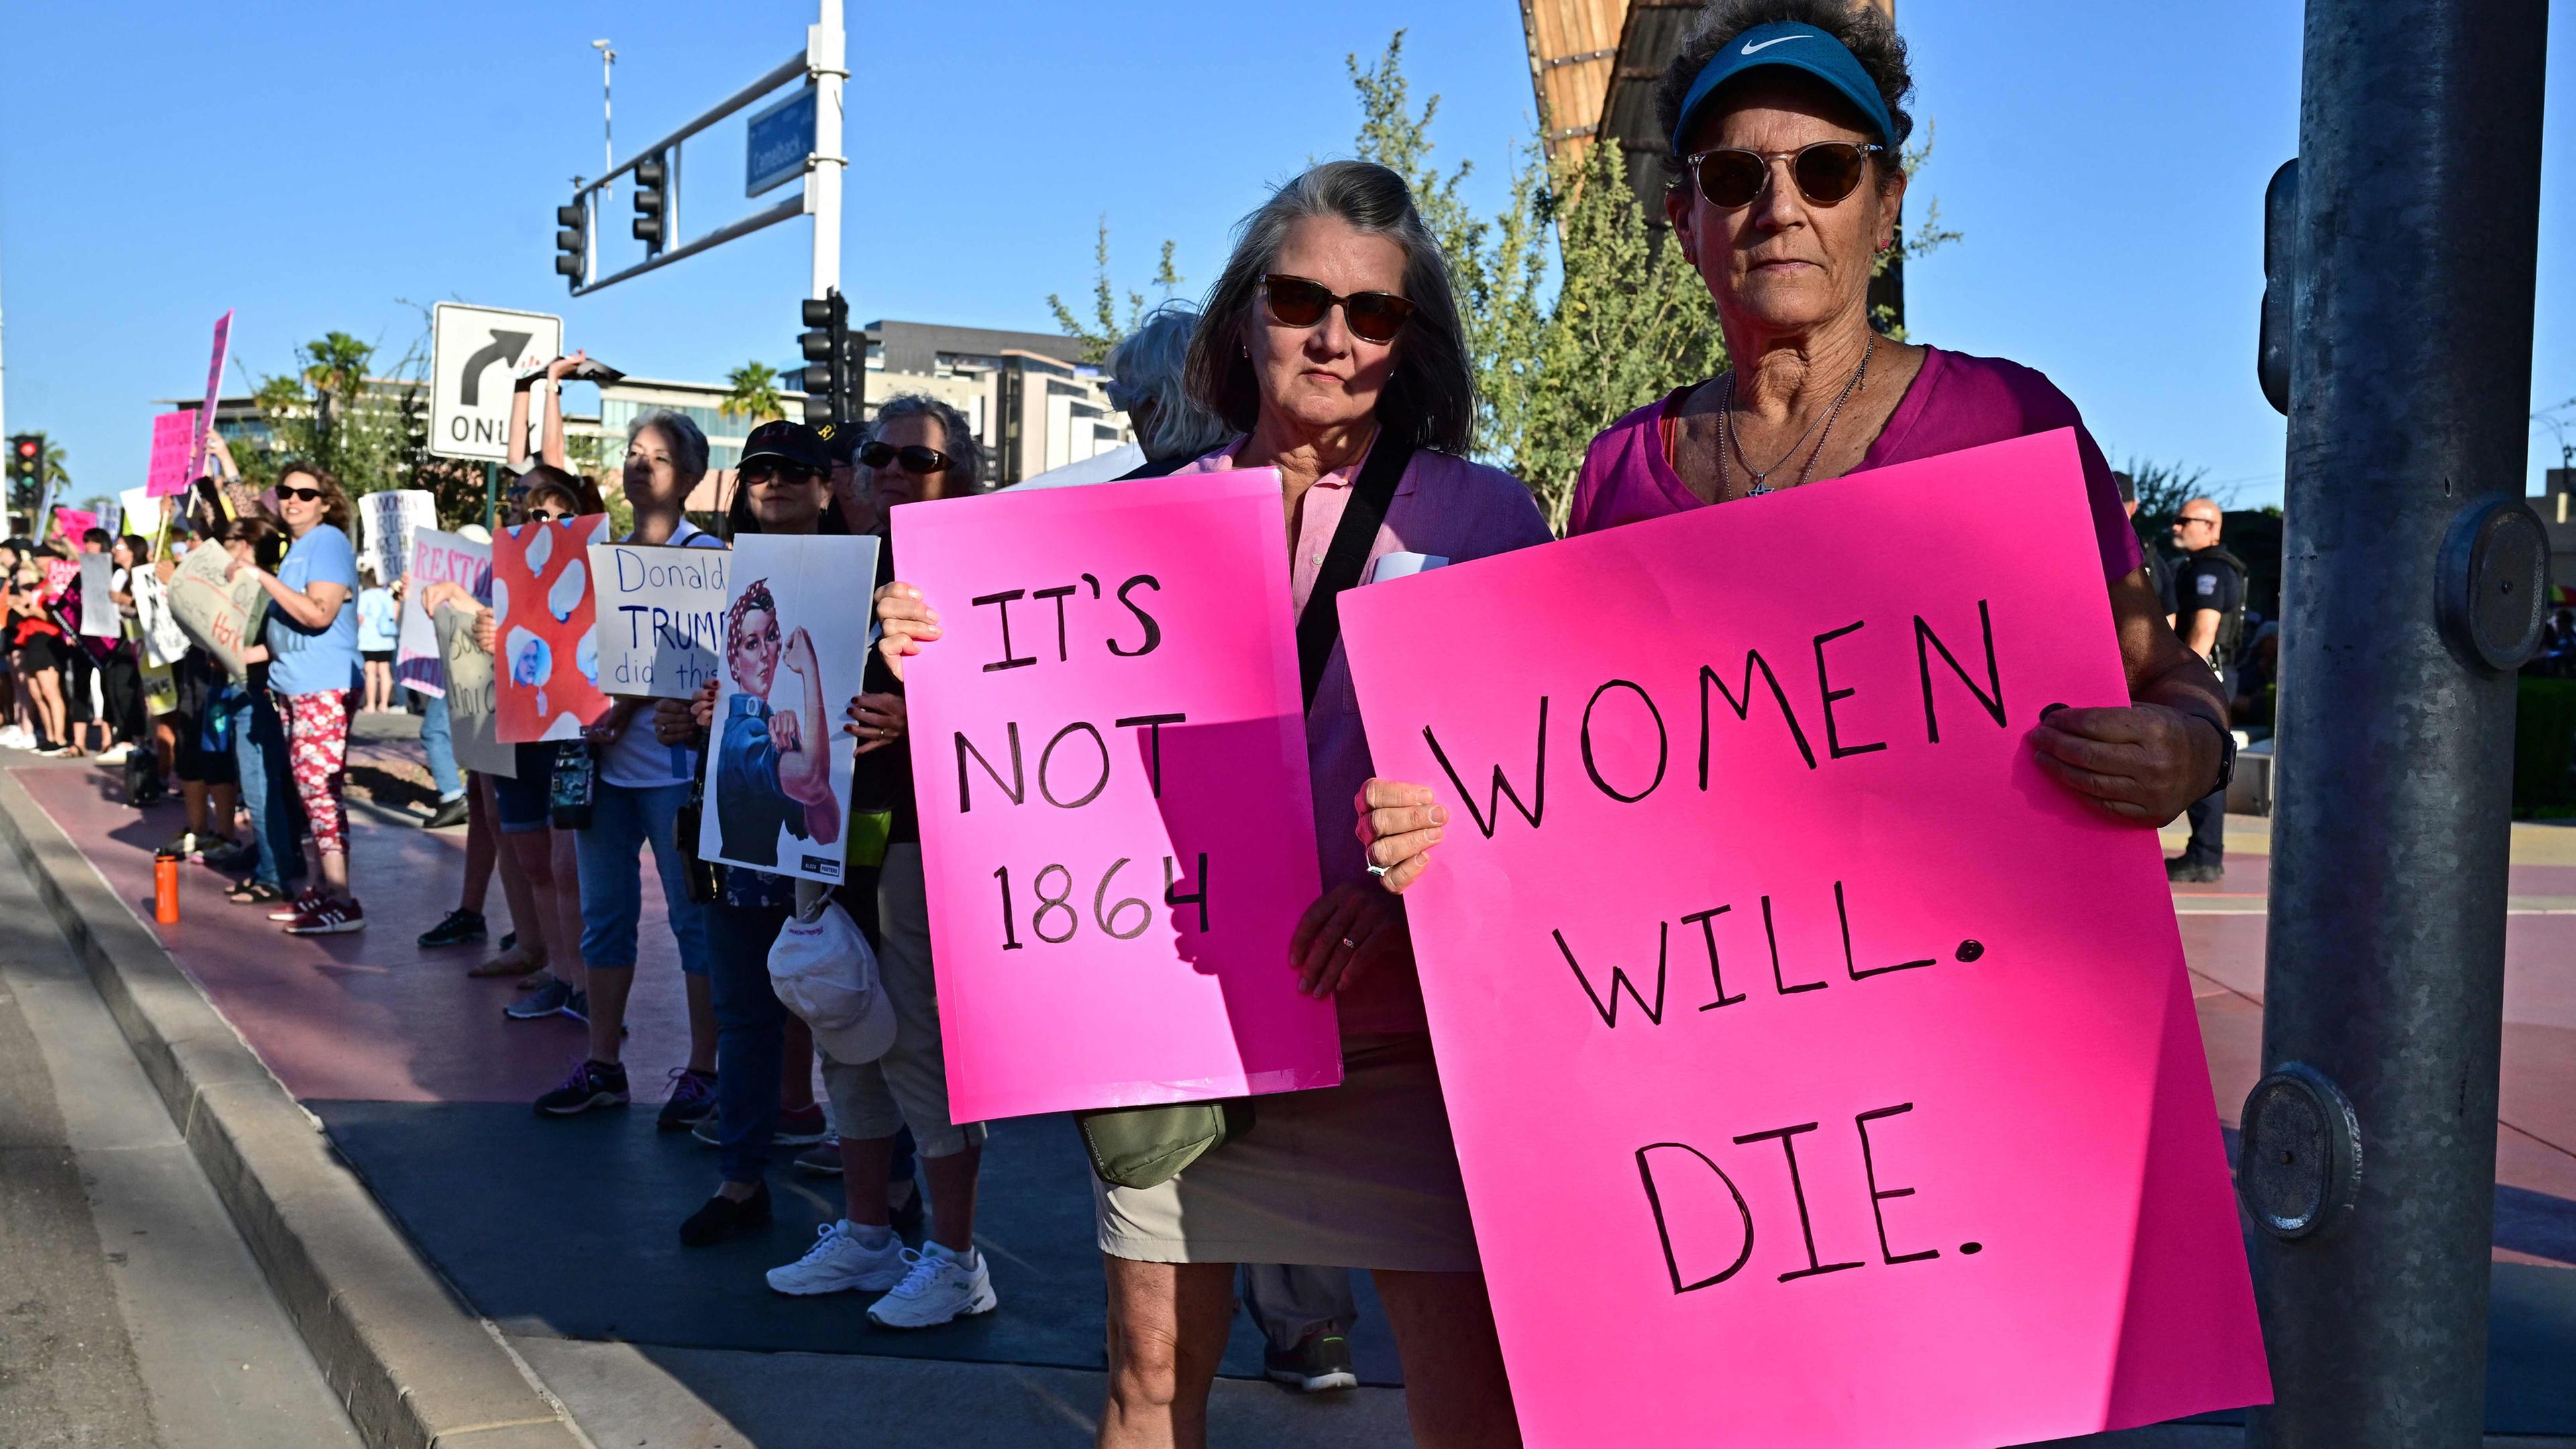 Am Straßenrand stehen Demonstranten mit Schildern, vorne sind zwei Frauen zu sehen, die pinke Schilder in die Kamera halten mit den Aufschriften "Frauen werden streben" und "Es ist nicht 1864".